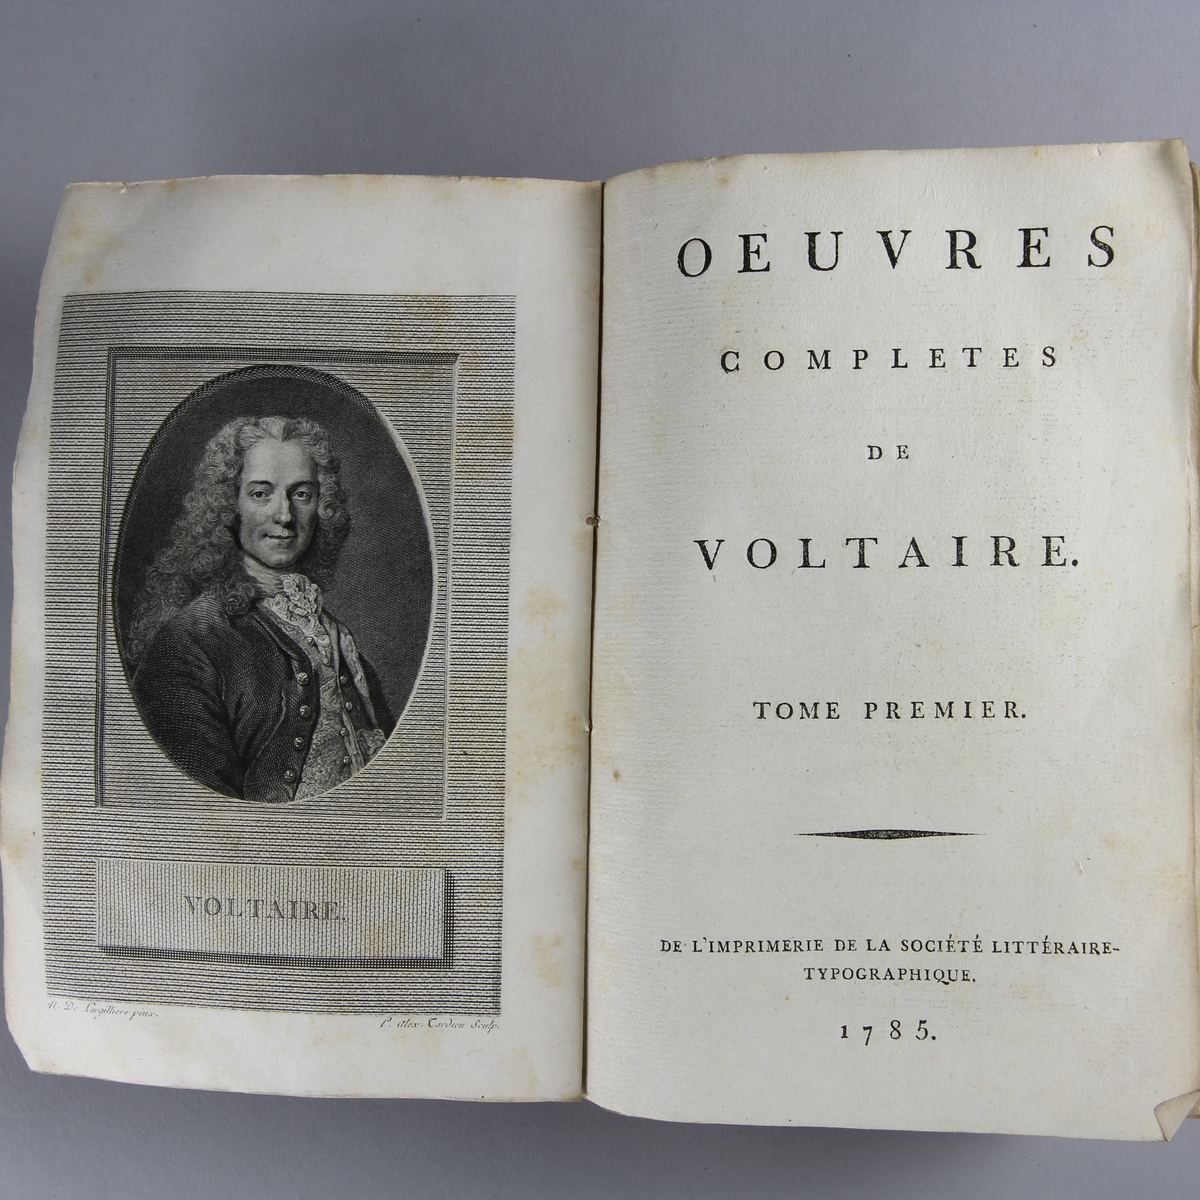 Bok, häftad,"Oeuvres complètes de Voltaire." del 6, tryckt 1785.
Pärm av gråblått papper, skurna snitt. Blekt rygg med pappersetikett med tryckt text med volymens namn och nummer.